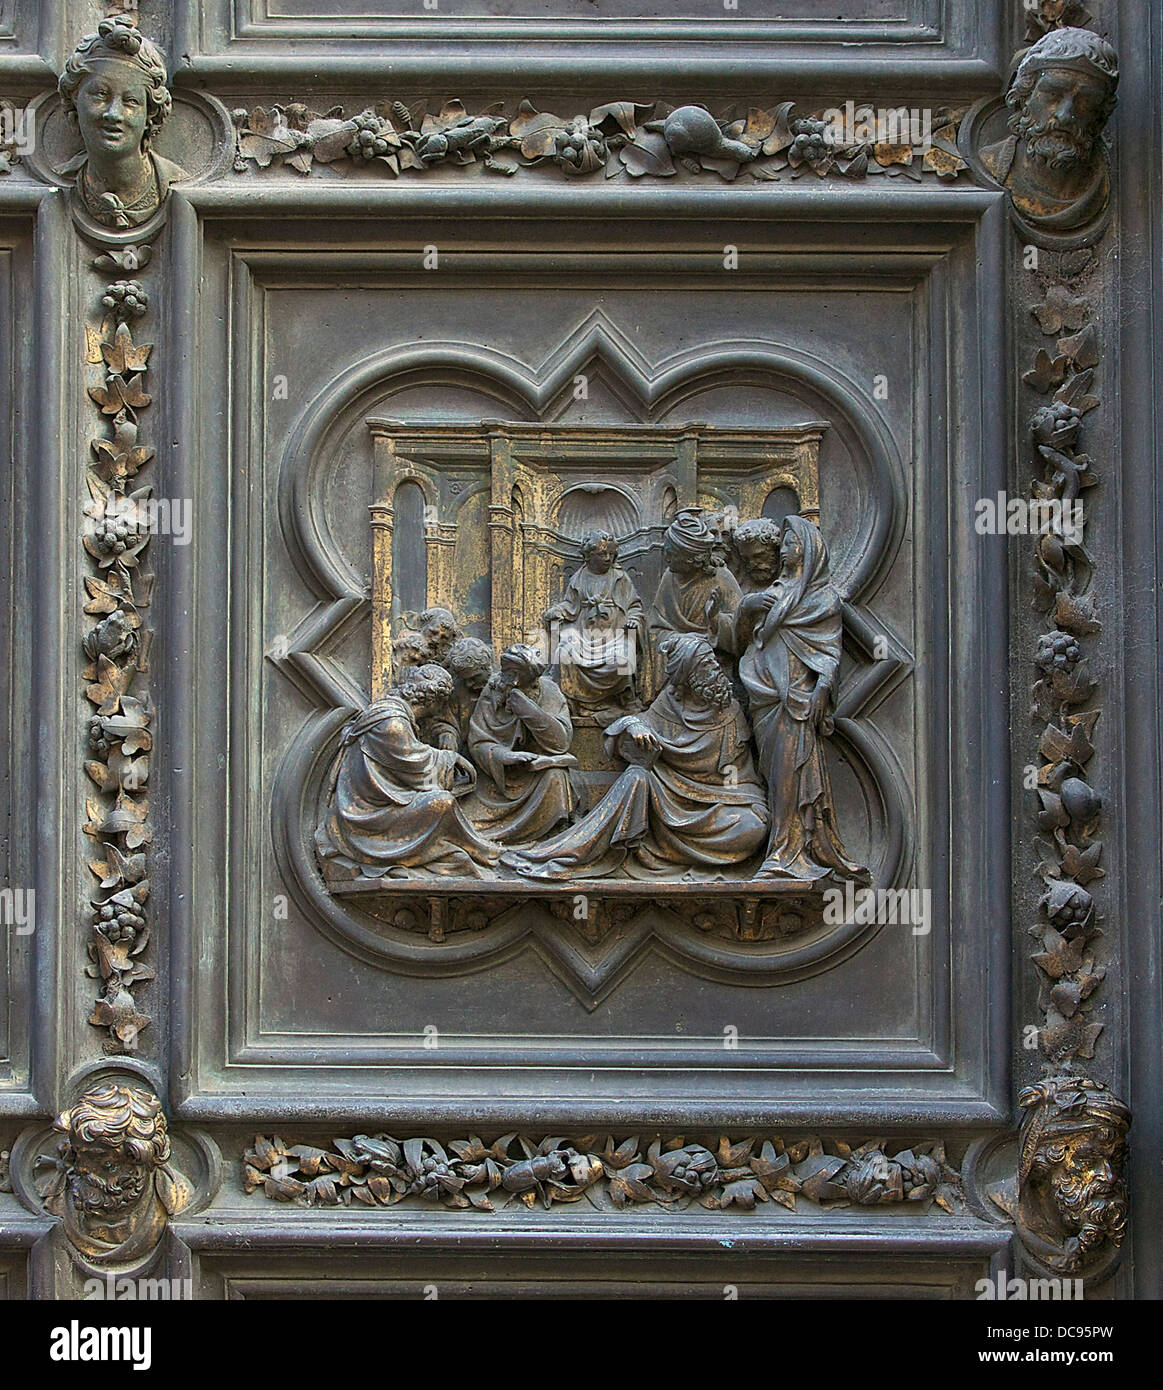 Jésus parmi les docteurs", plaque de bronze de la porte nord du baptistère de Florence, Italie. Banque D'Images